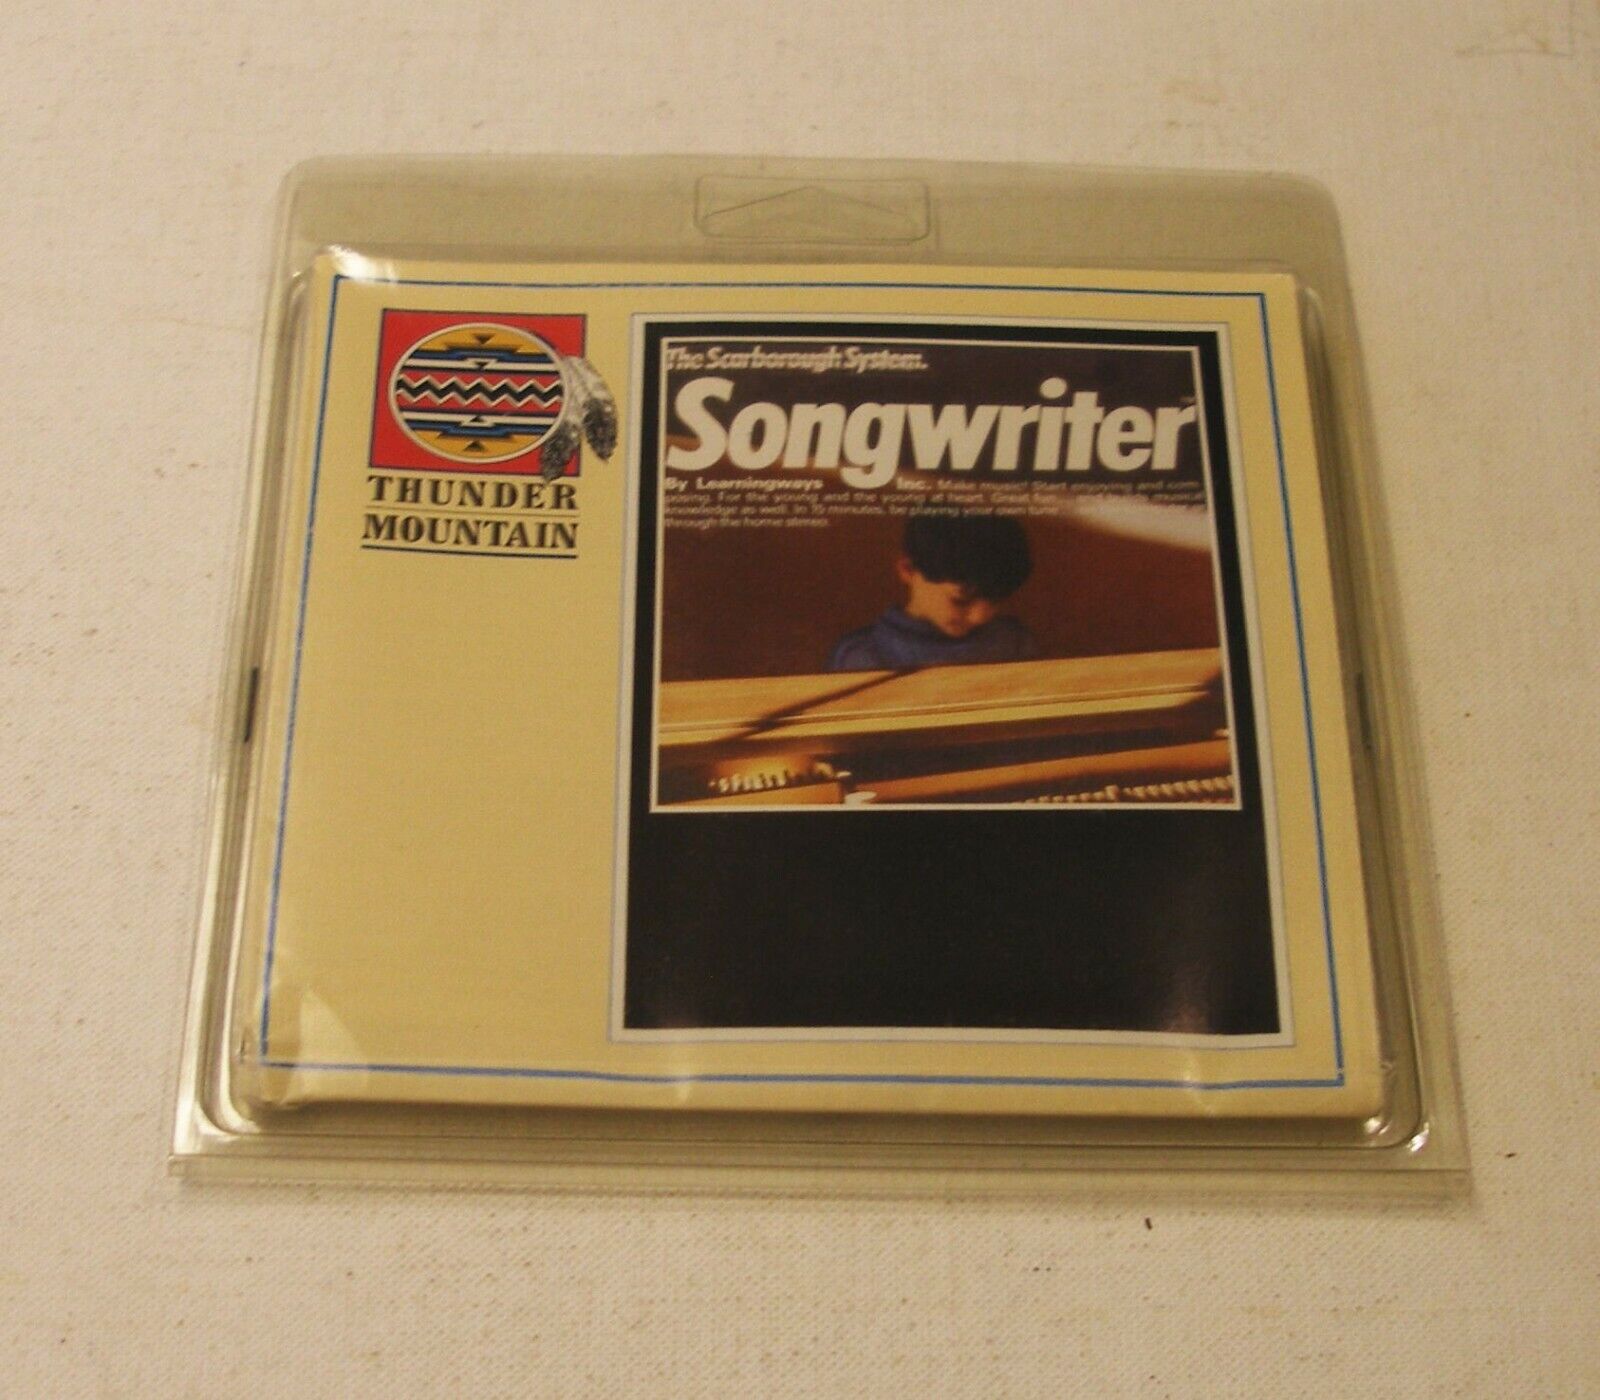 Songwriter by Thunder Mountain for Apple II+, Apple IIe, Apple IIc, IIGS - NEW